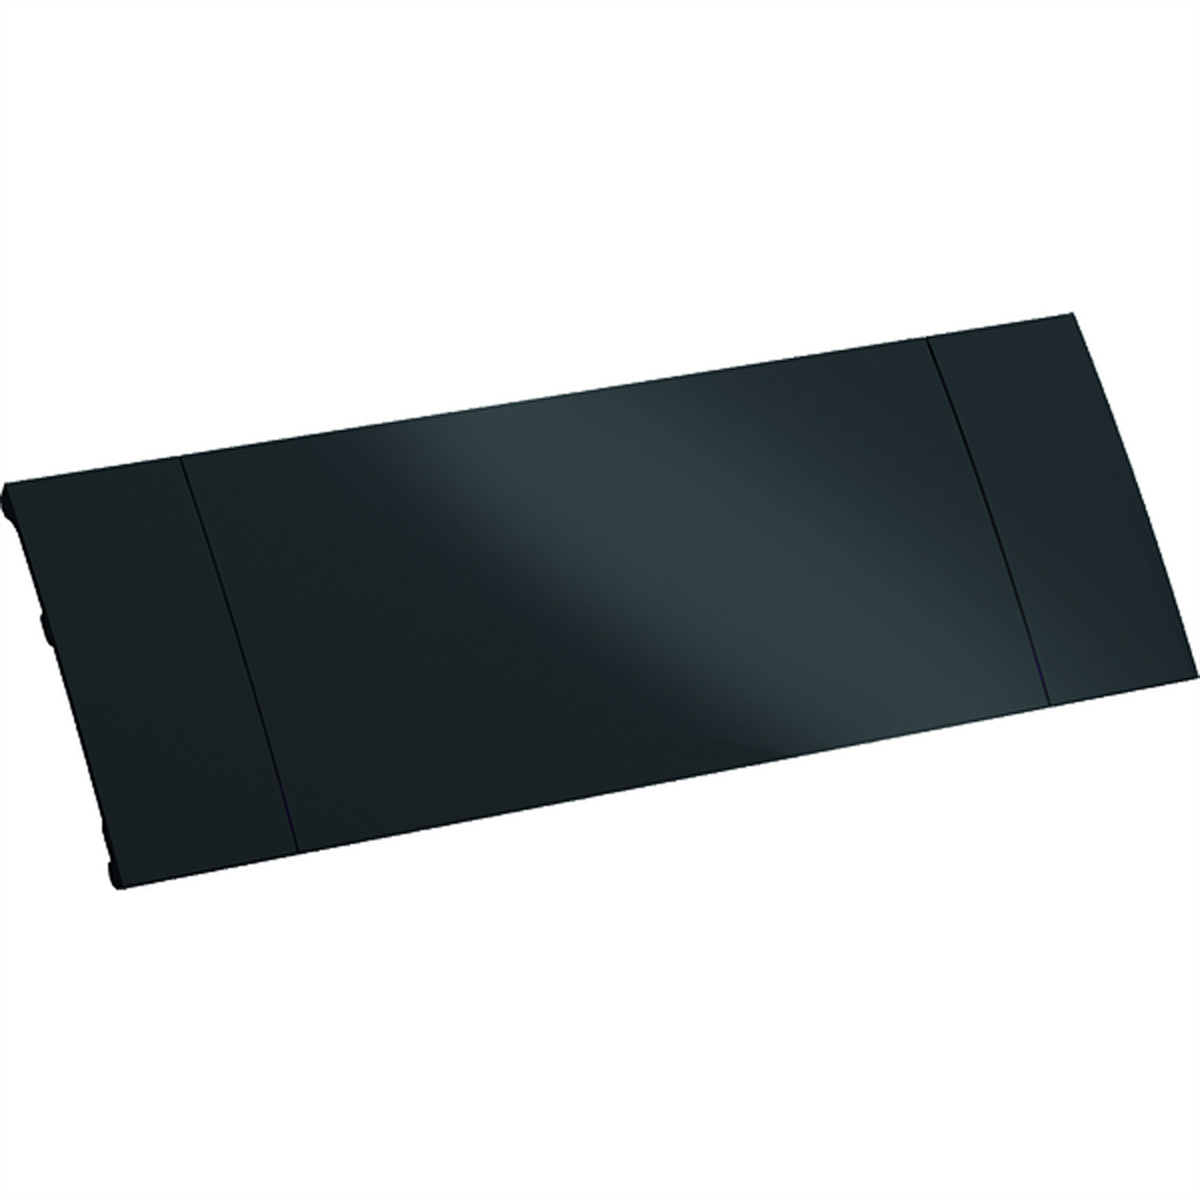 BACHMANN Power Frame Cover 3-fach, schwarz, zum Einkleben in den Tisch